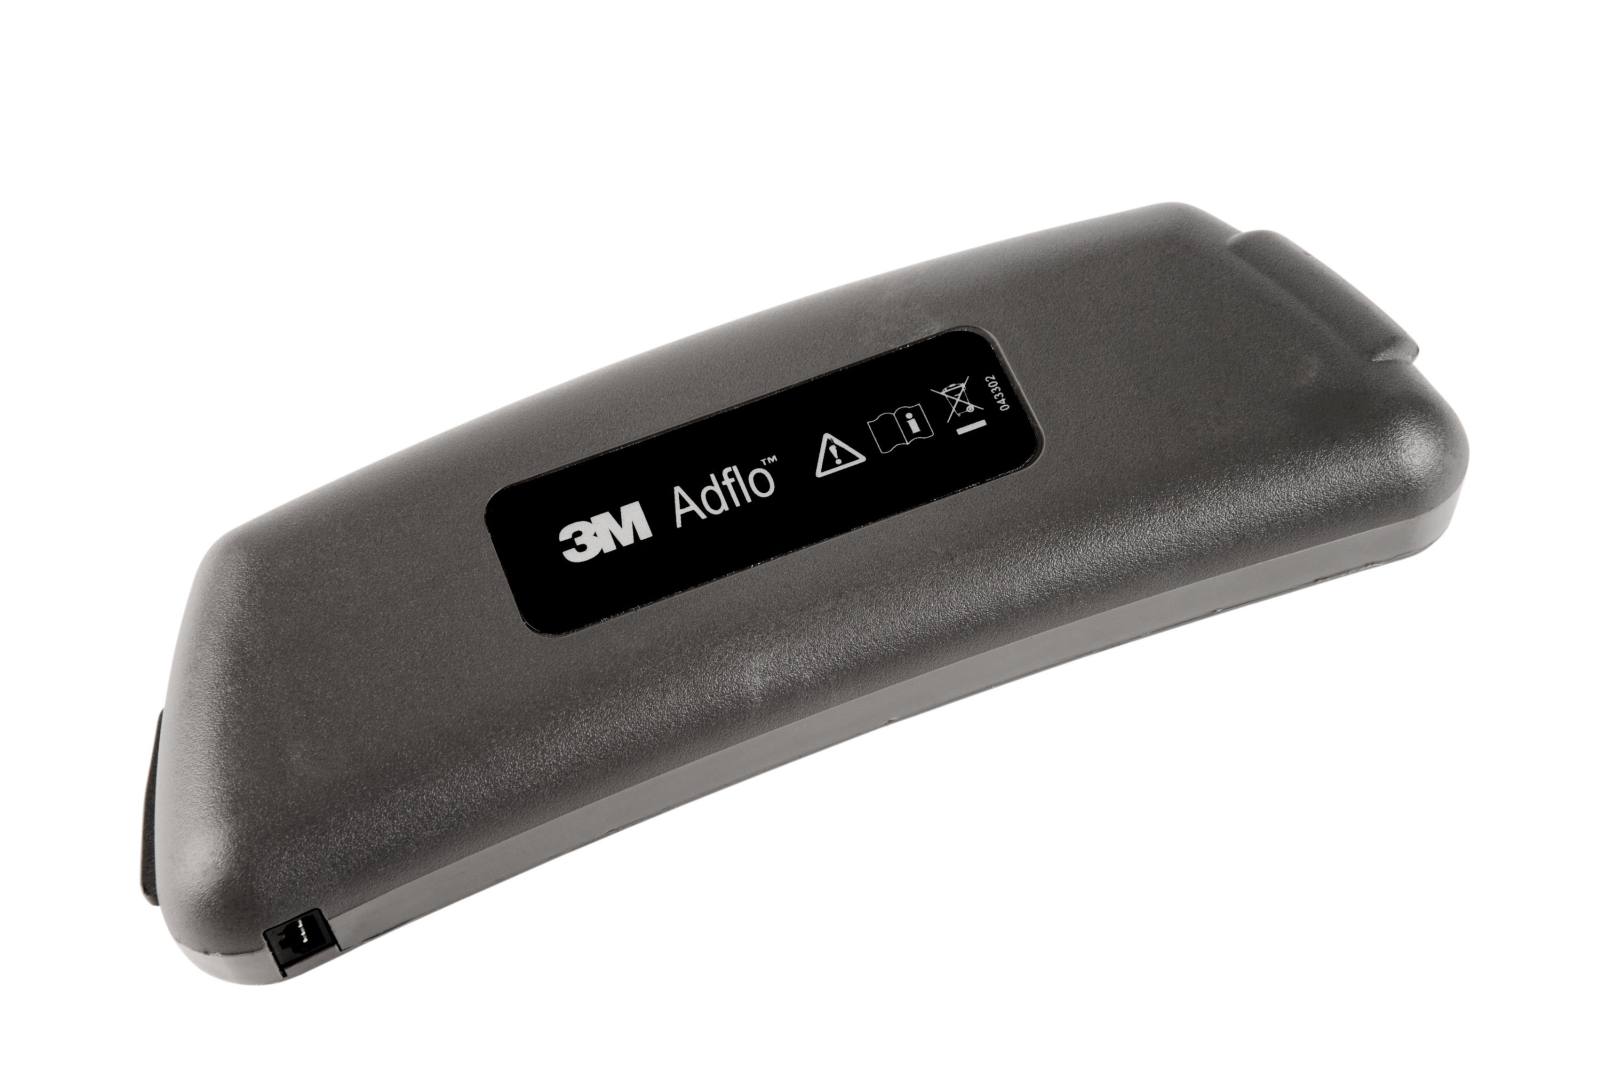 3M Adflo Li-Ion batería recargable estándar, duración de la batería hasta 8 horas #837630